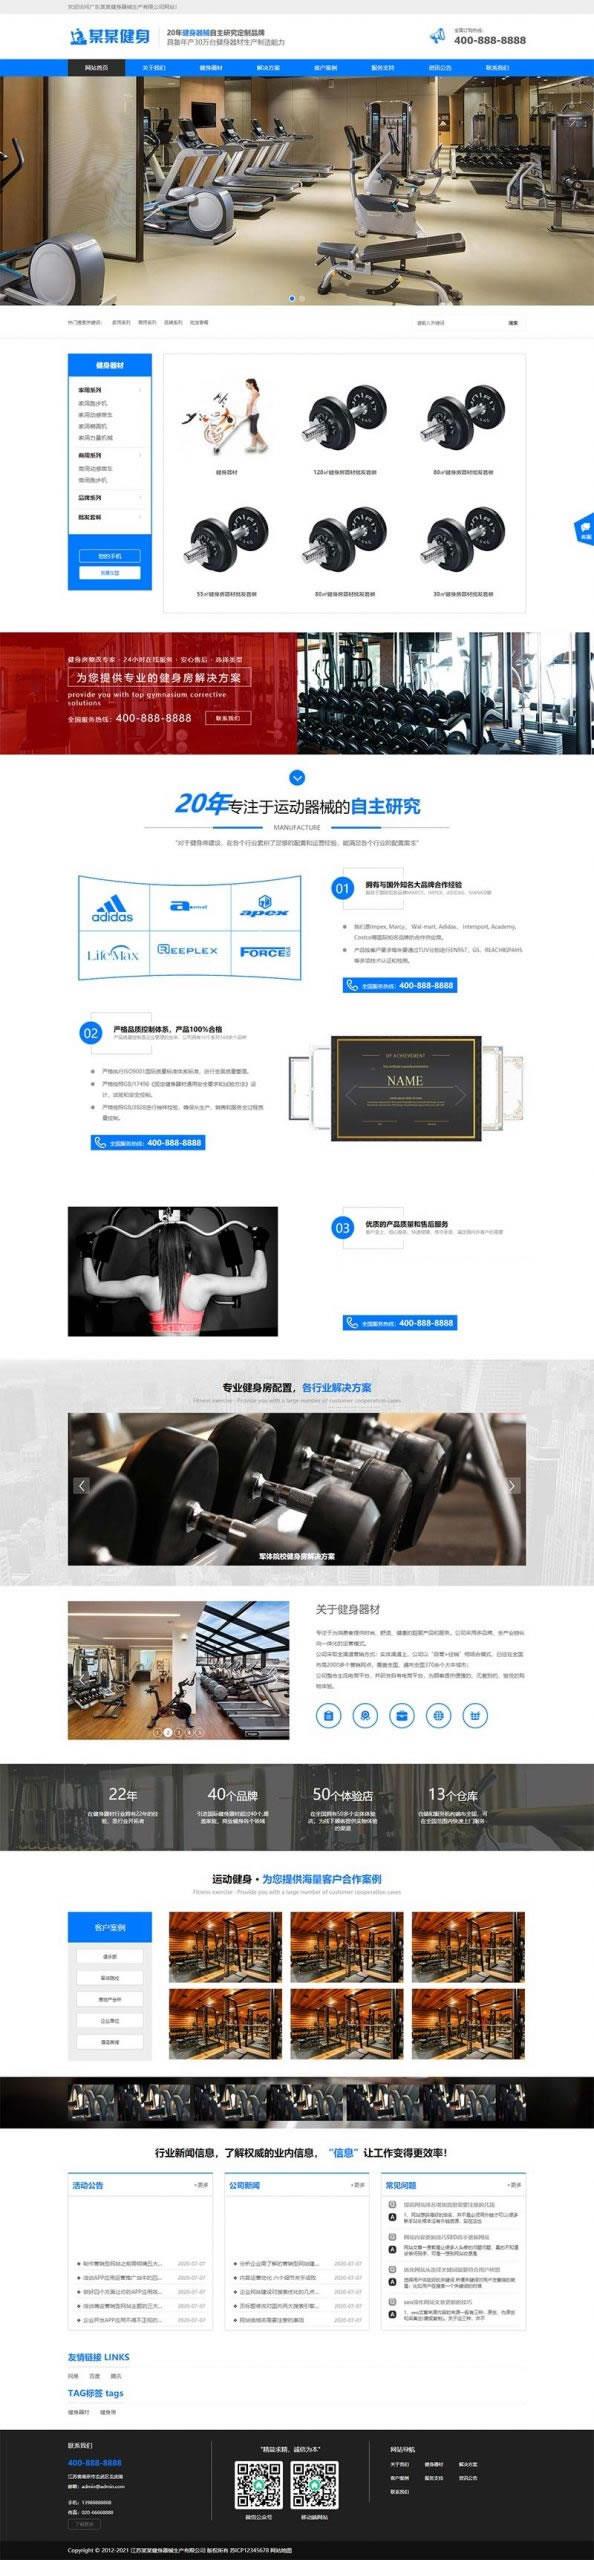 织梦内核蓝色响应式营销型运动健身器械器材企业网站模板 带手机版